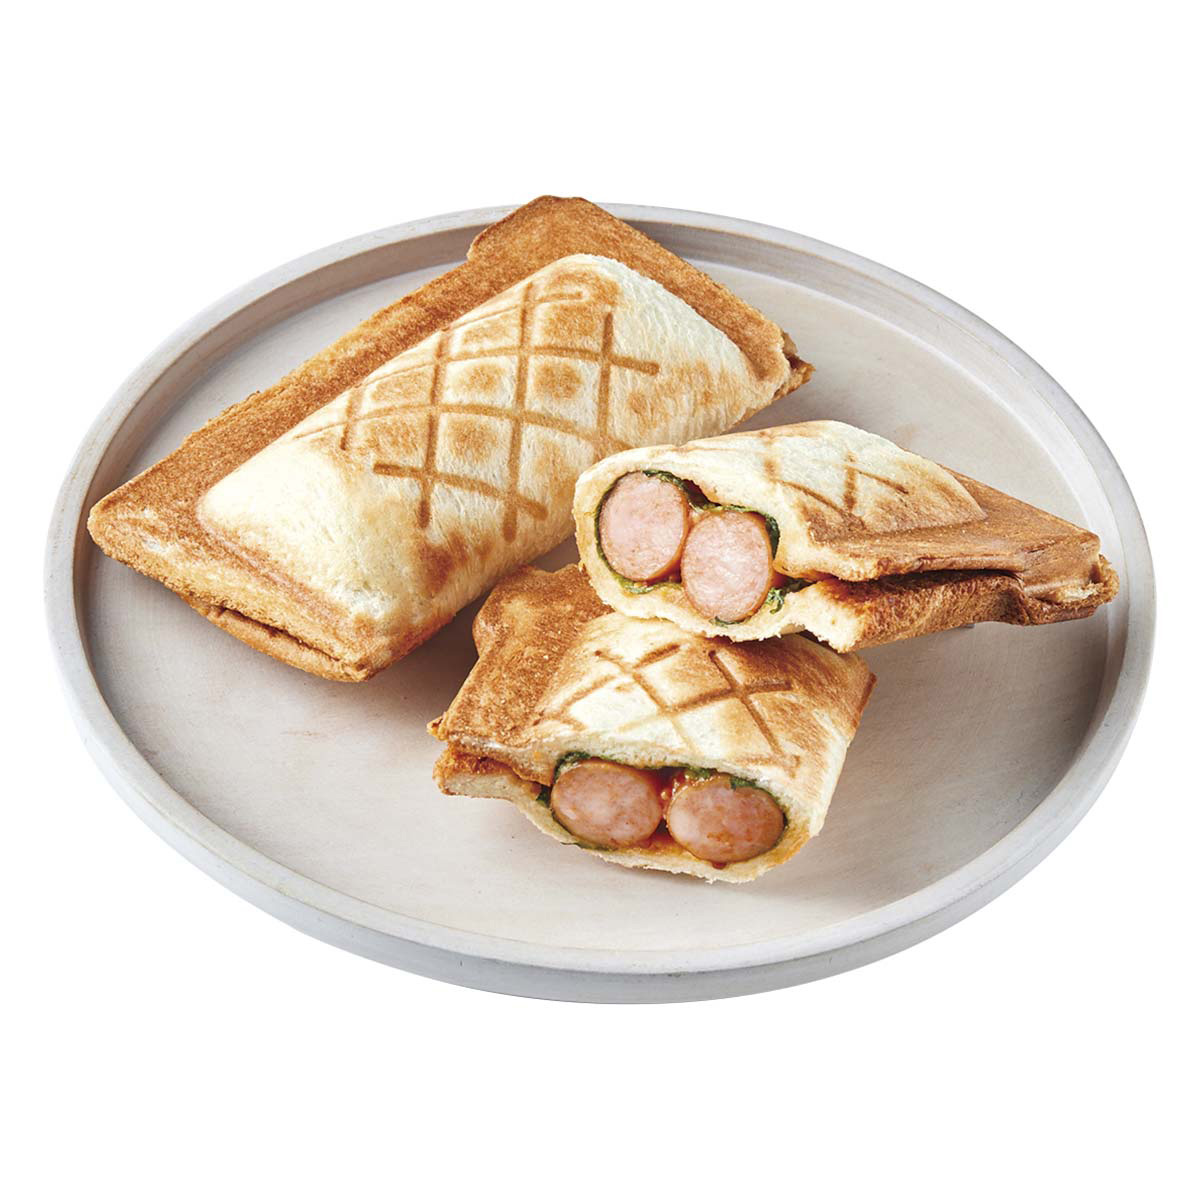 プレスサンドメーカー ミニ ホットサンドメーカー 1枚焼き レシピブック付 食パン プレート固定式 食パン 朝ごはん おやつ かわいい ペールブルー